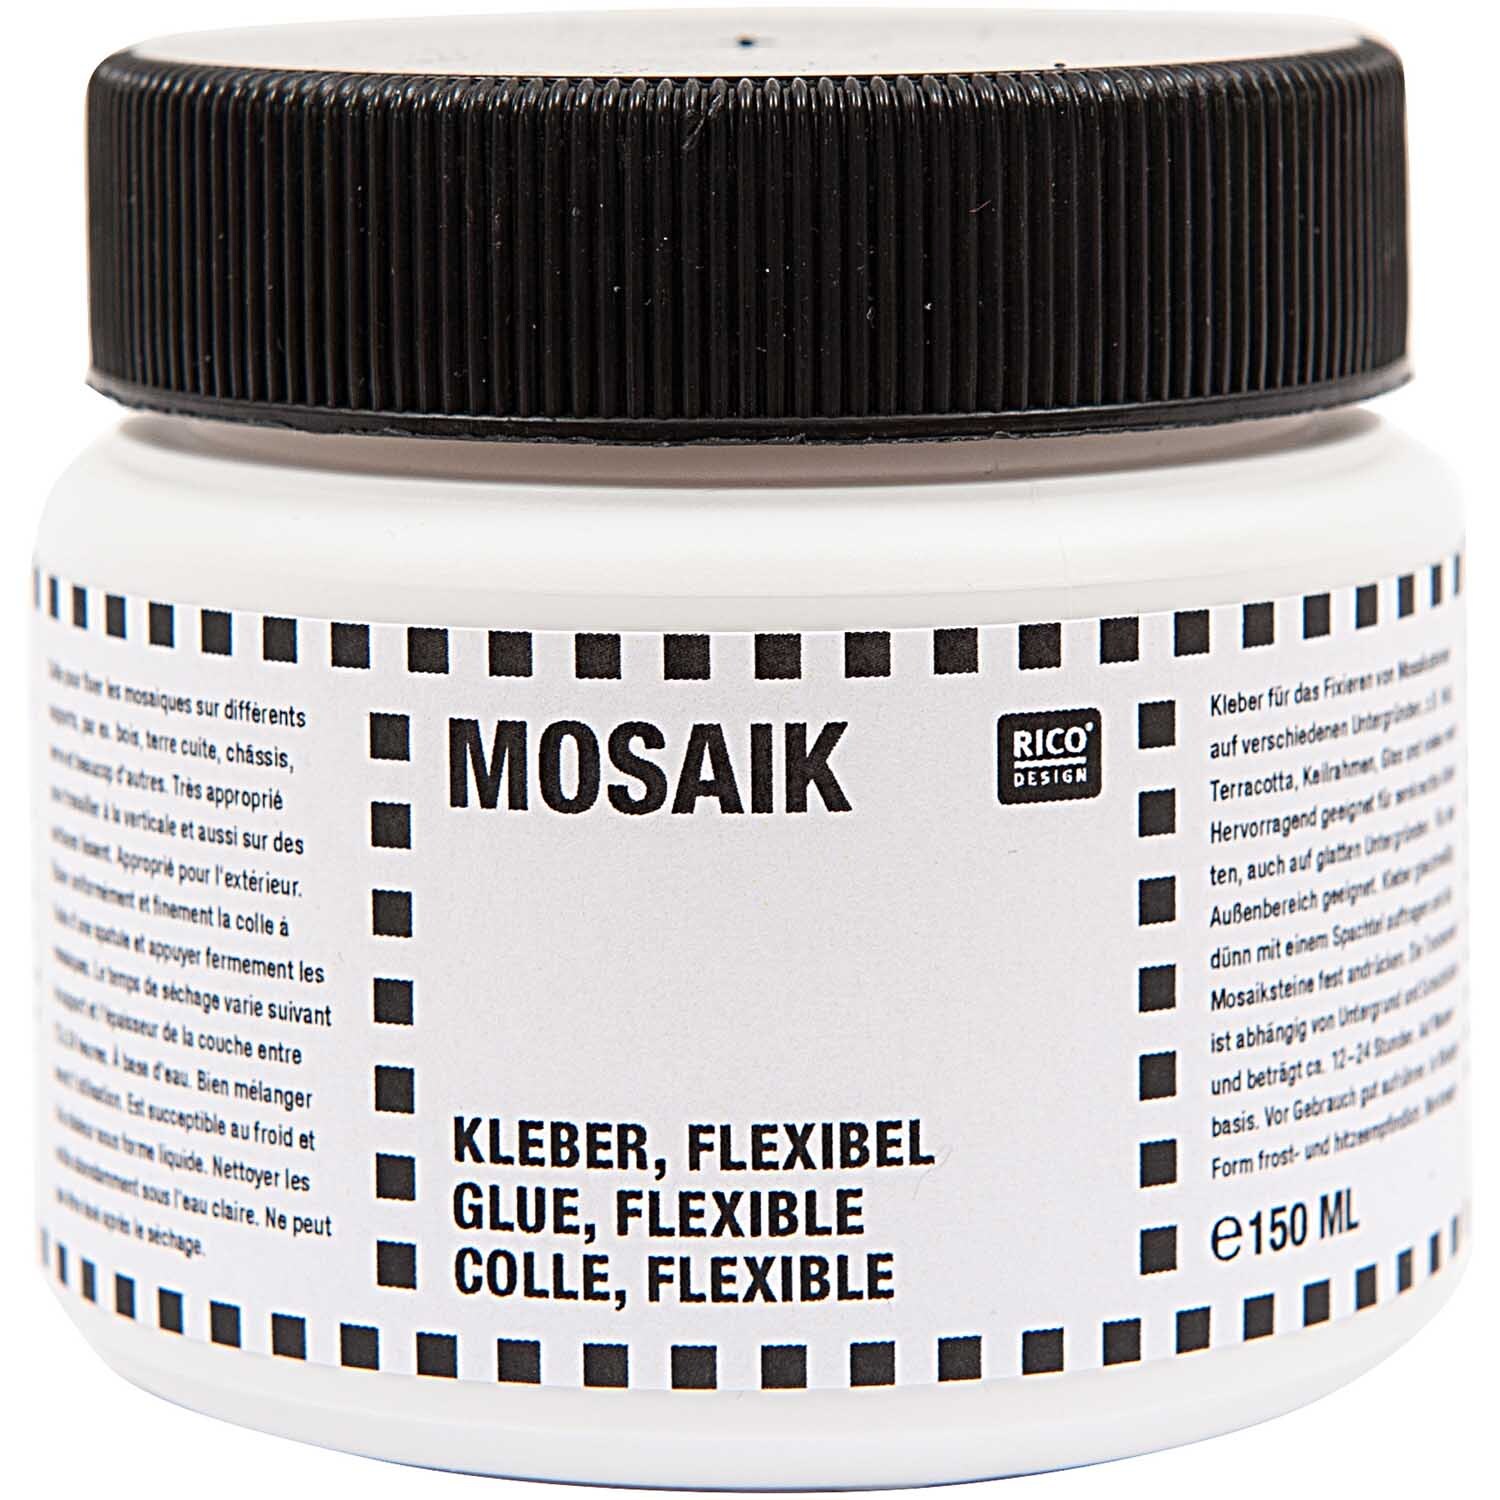 Mosaikkleber flexibel 150ml